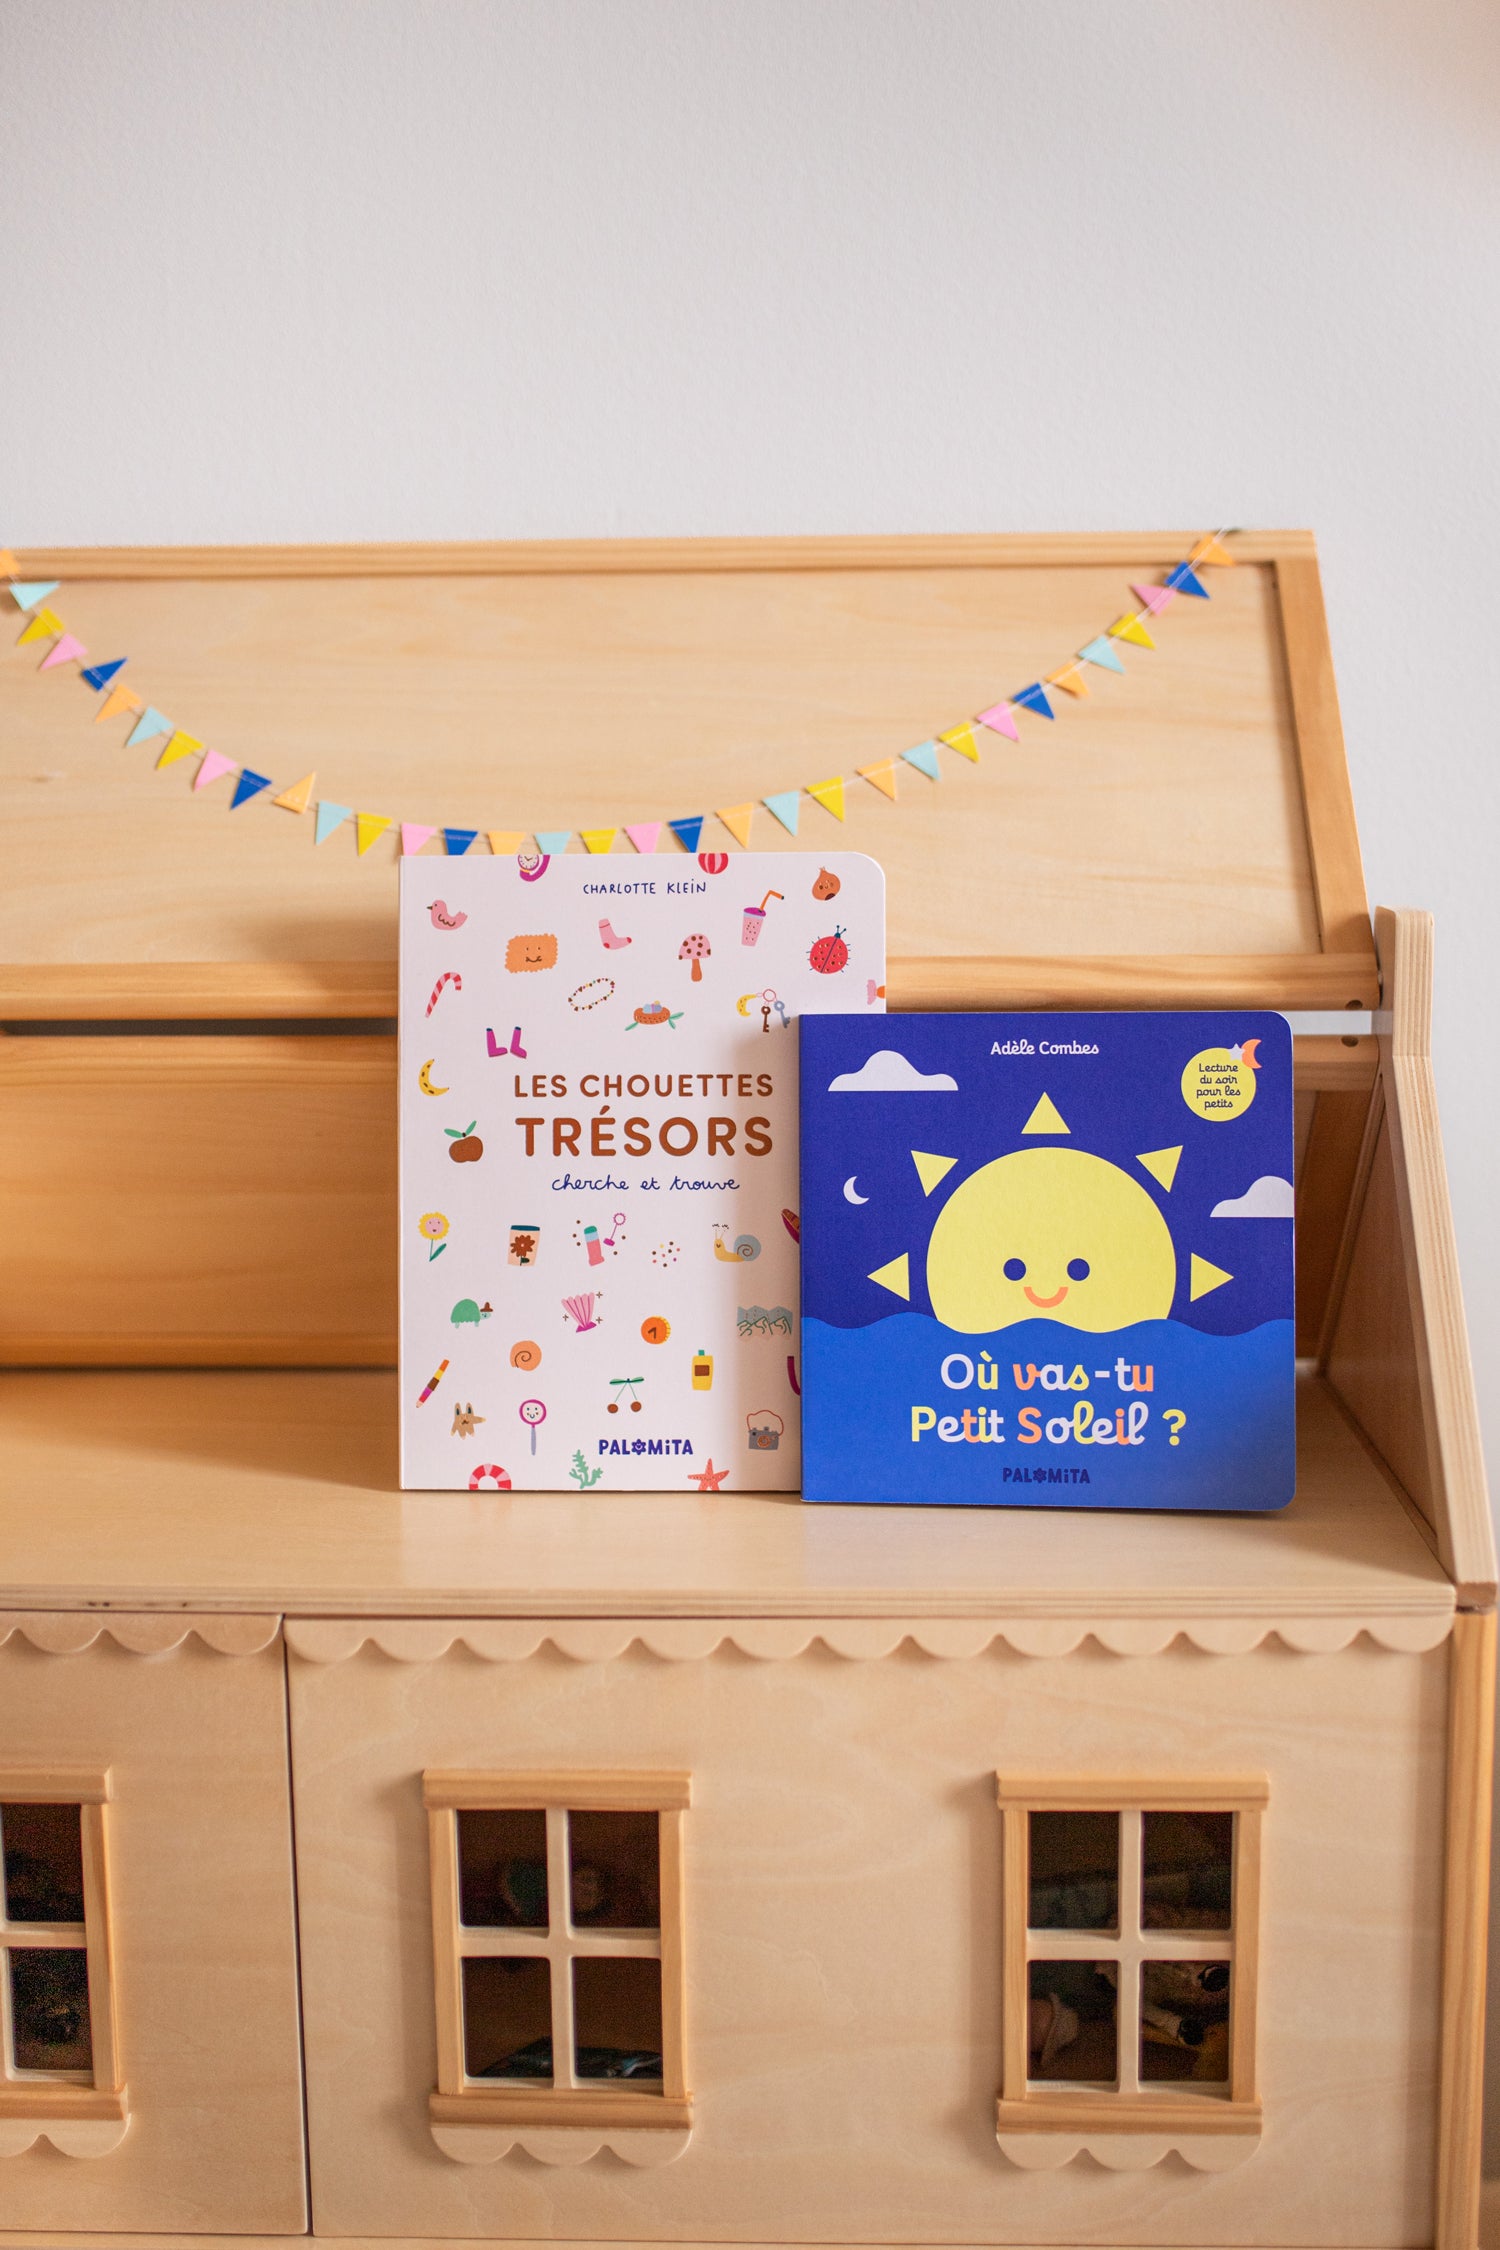 Livres pour enfants : les chouettes trésors (livre cherche et trouve) et où vas-tu petit soleil. Ici posé dans un décor de chambre d'enfants, sur une maison de poupée en bois. 